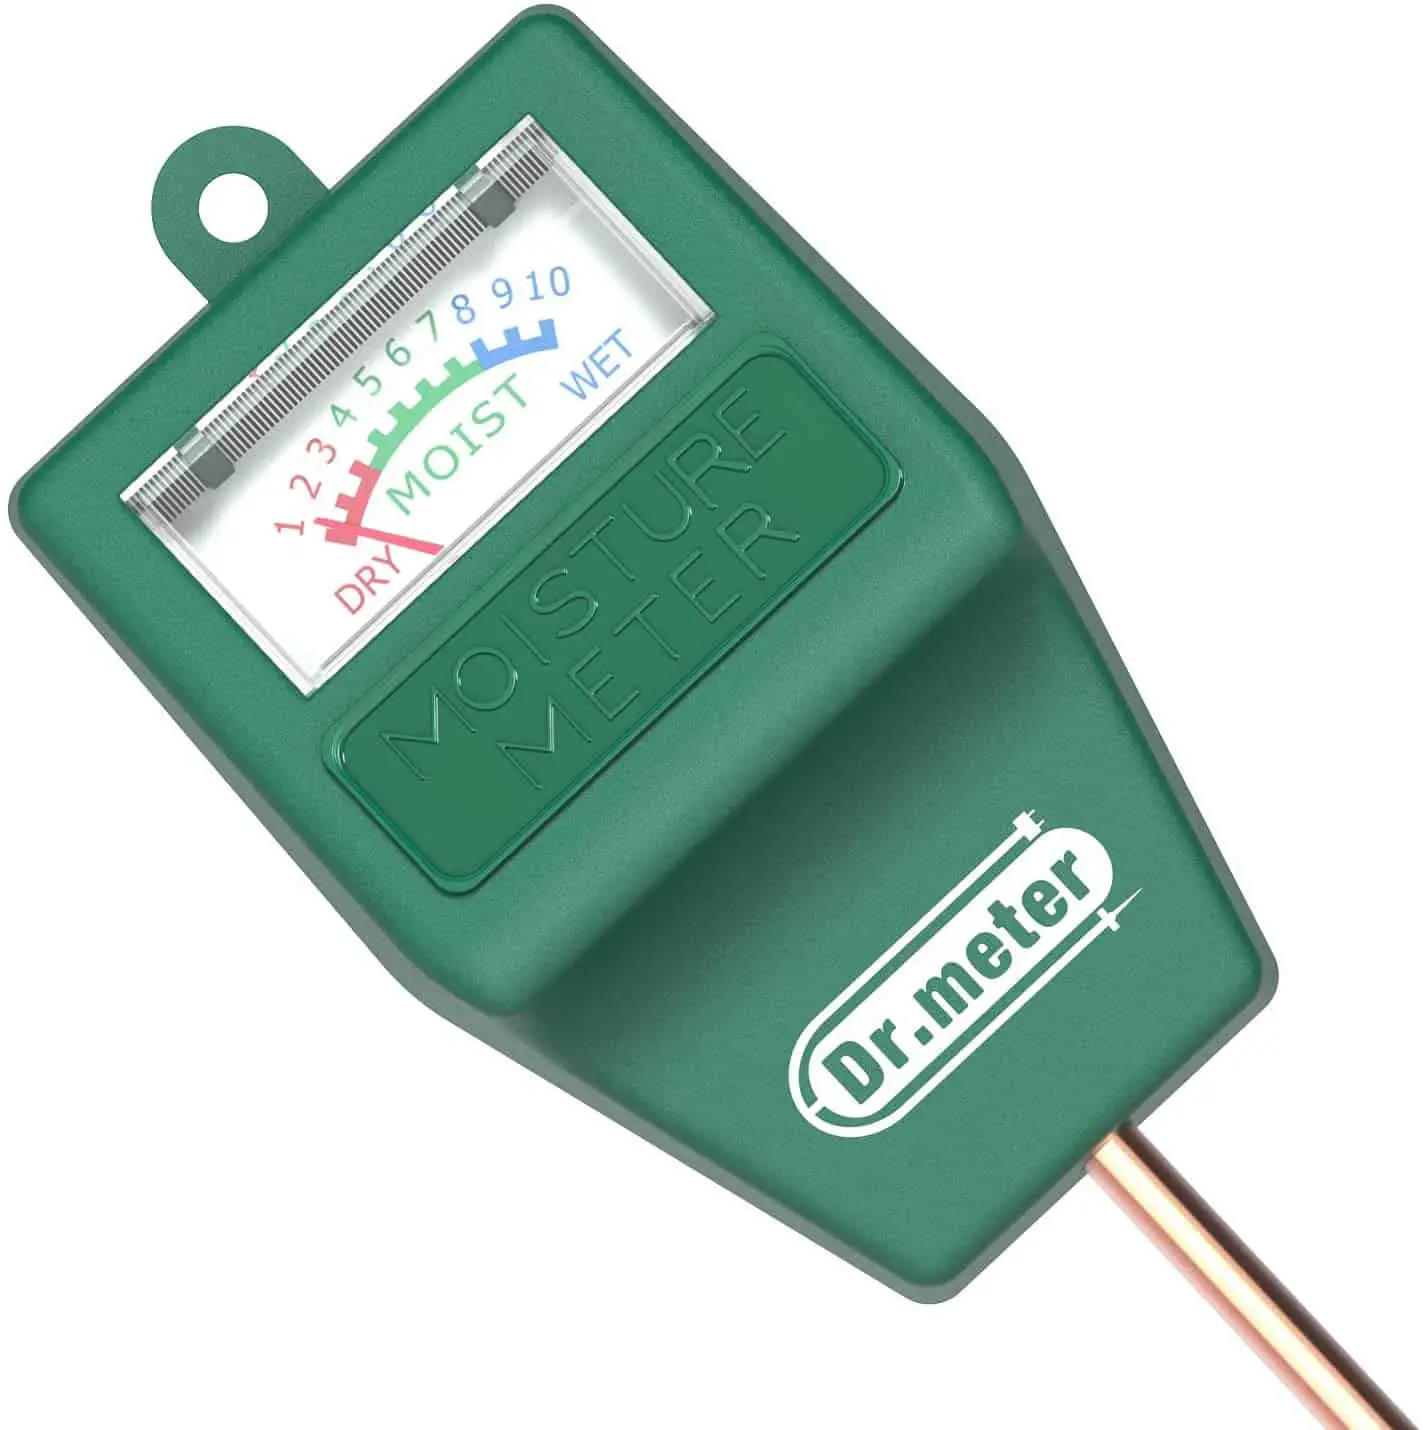 Best basic soil moisture meter- Dr. Meter Hygrometer